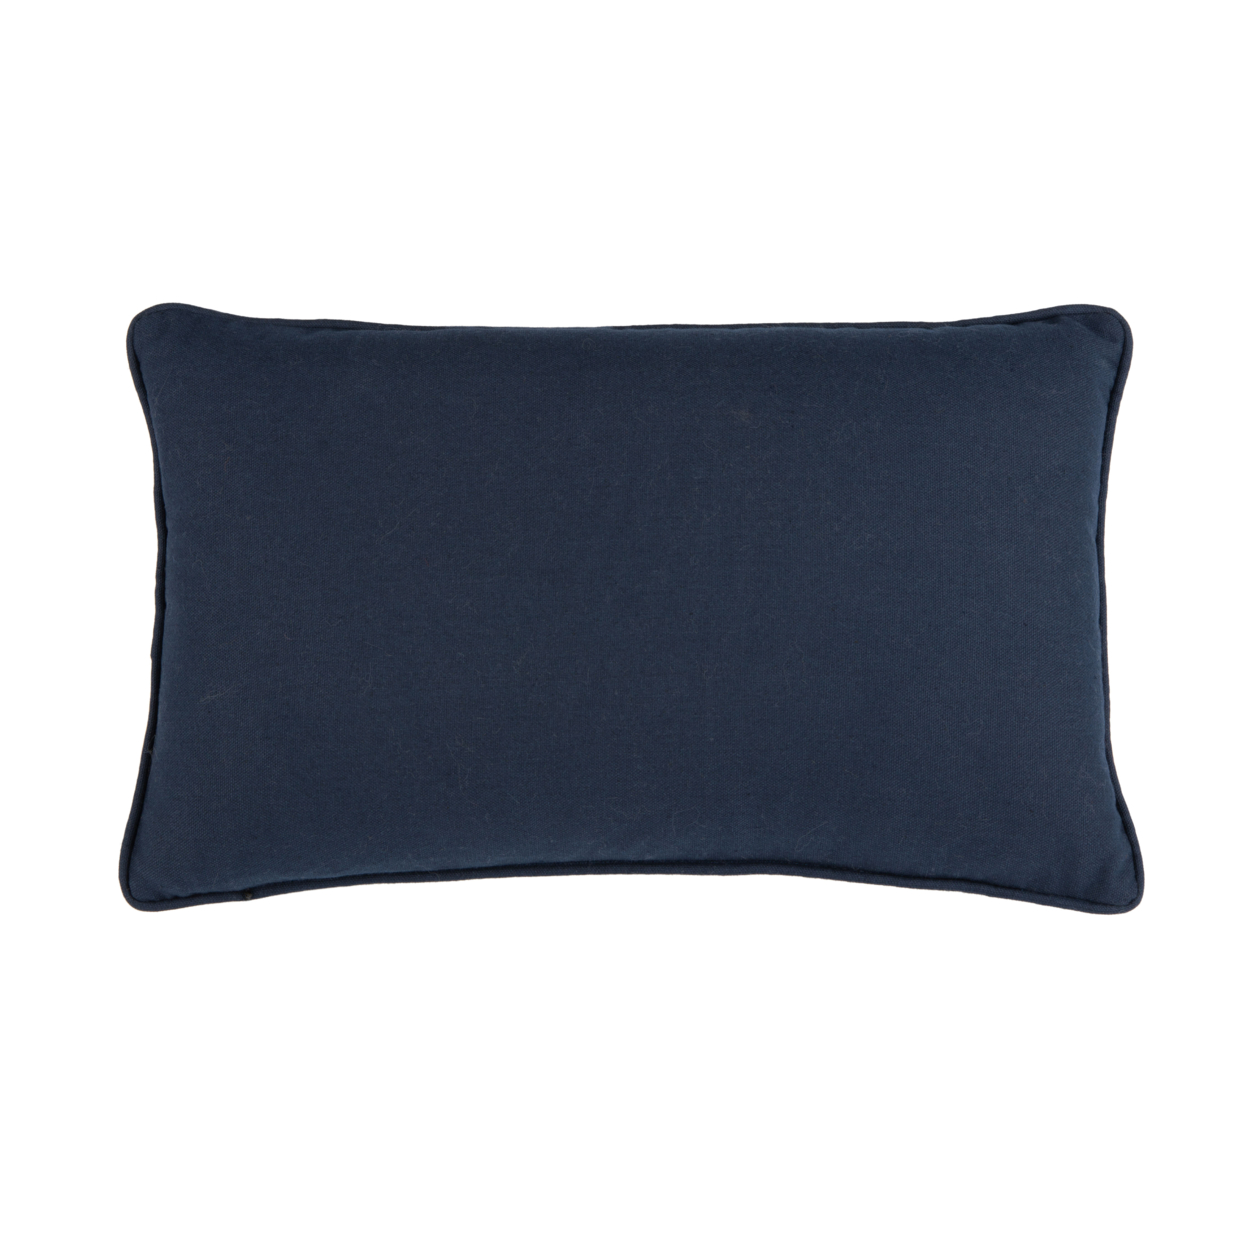 SAFAVIEH Enya Pillow Navy / Creme